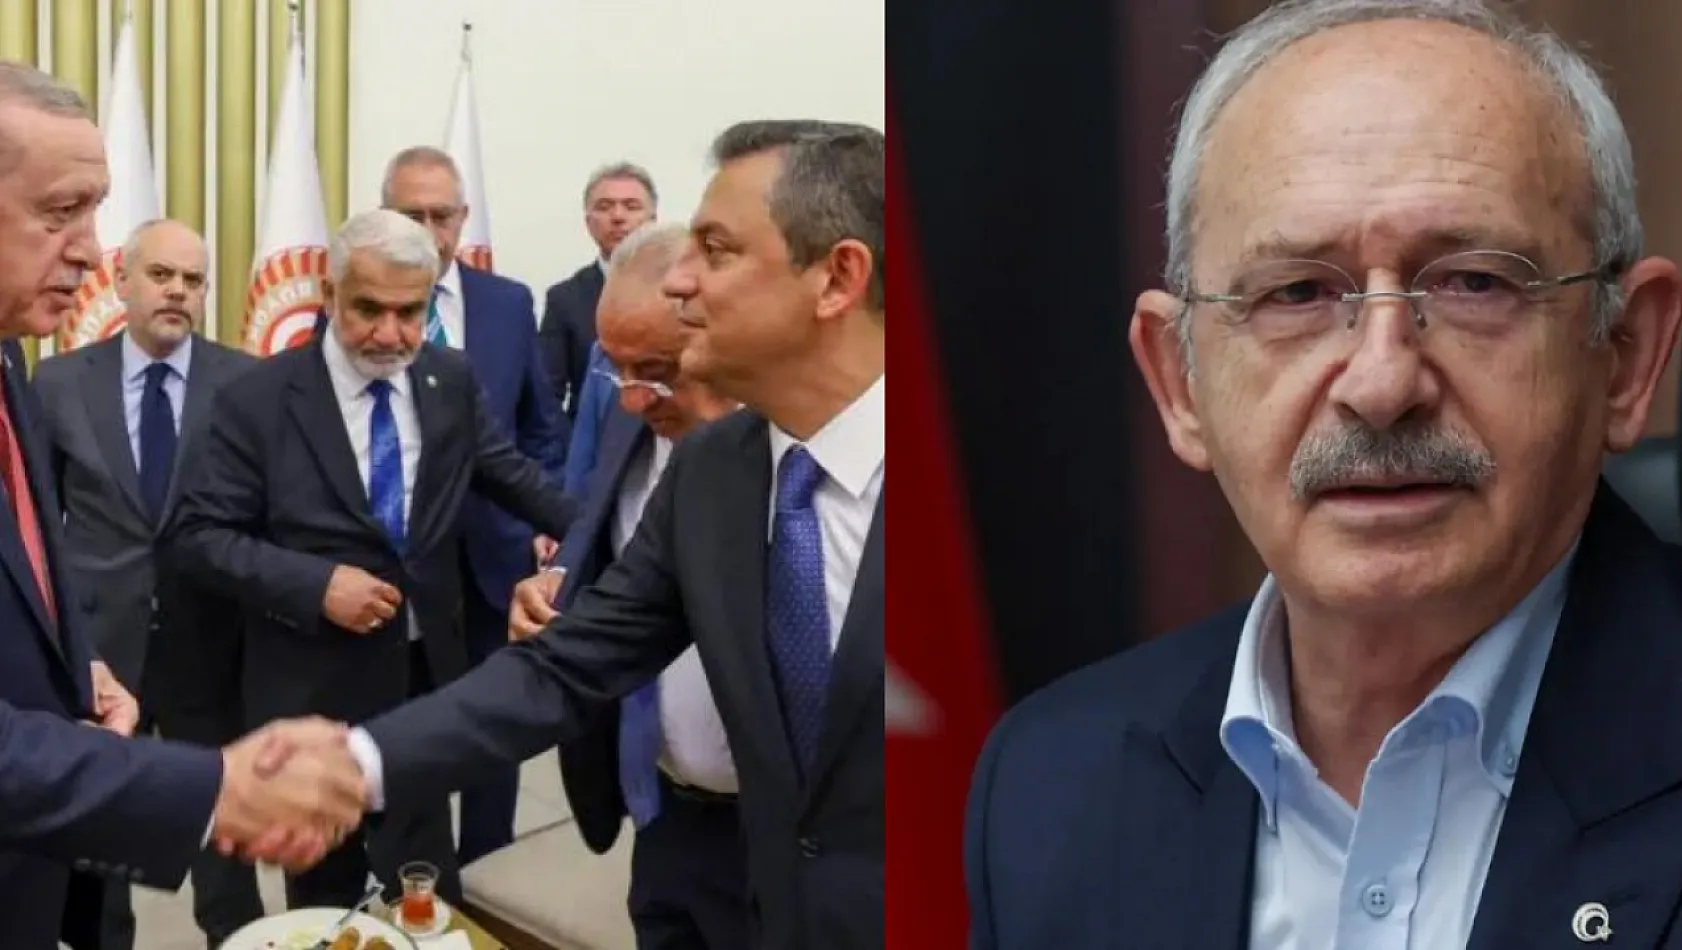 Özel ve Erdoğan'ın Görüşecek Olmasına Kılıçdaroğlu'dan Tepki: Sarayla müzakere olmaz, mücadele olur